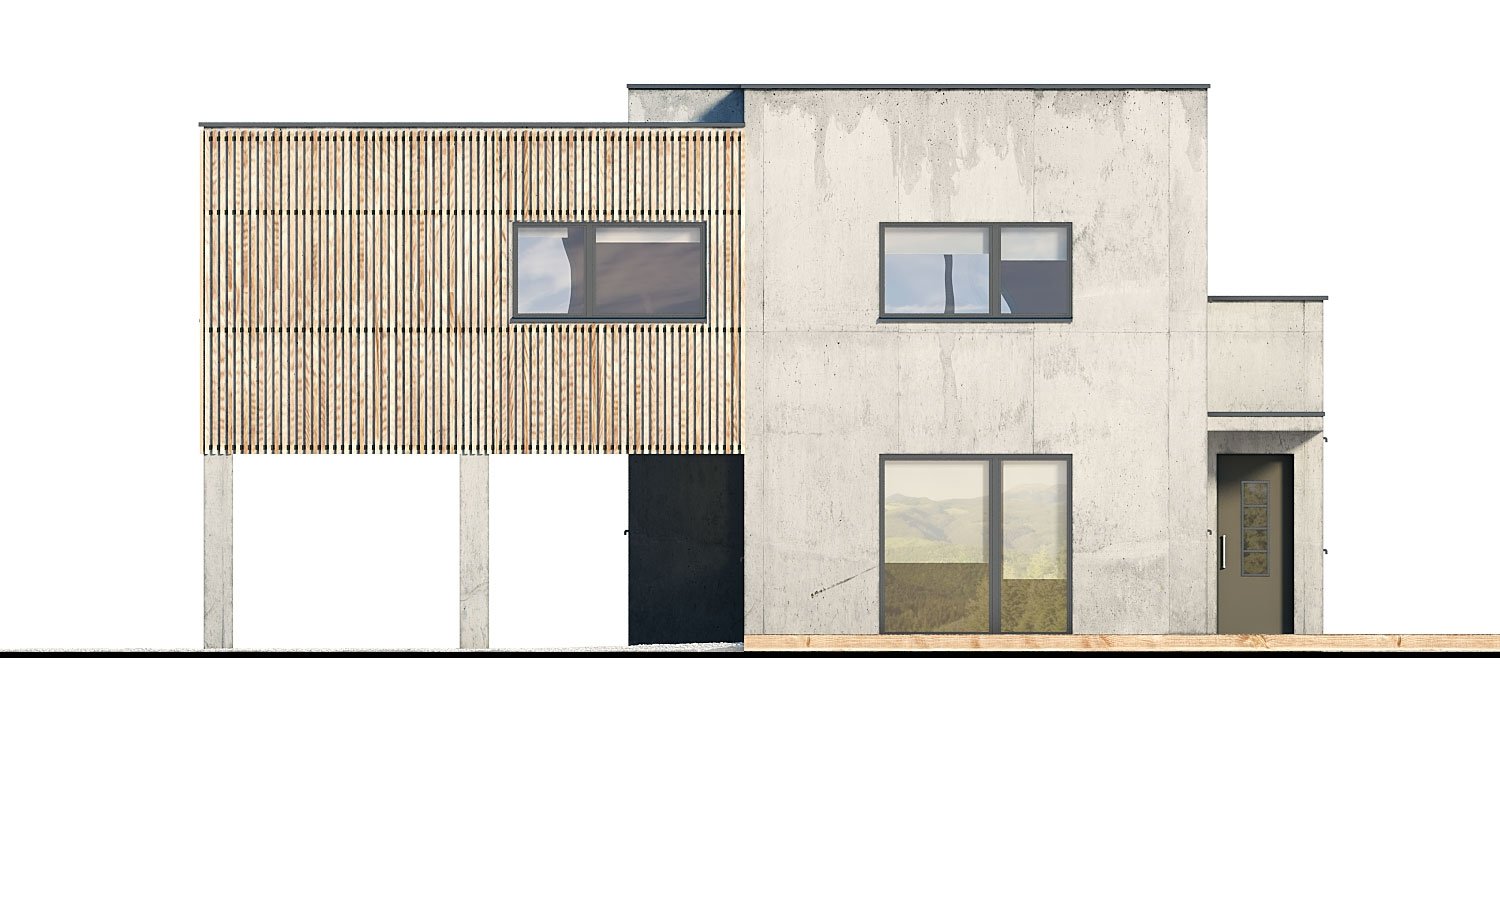 Pohľad 1. - Dvougenerační moderní rodinný dům s plochou střechou s krytým stáním pro auta.